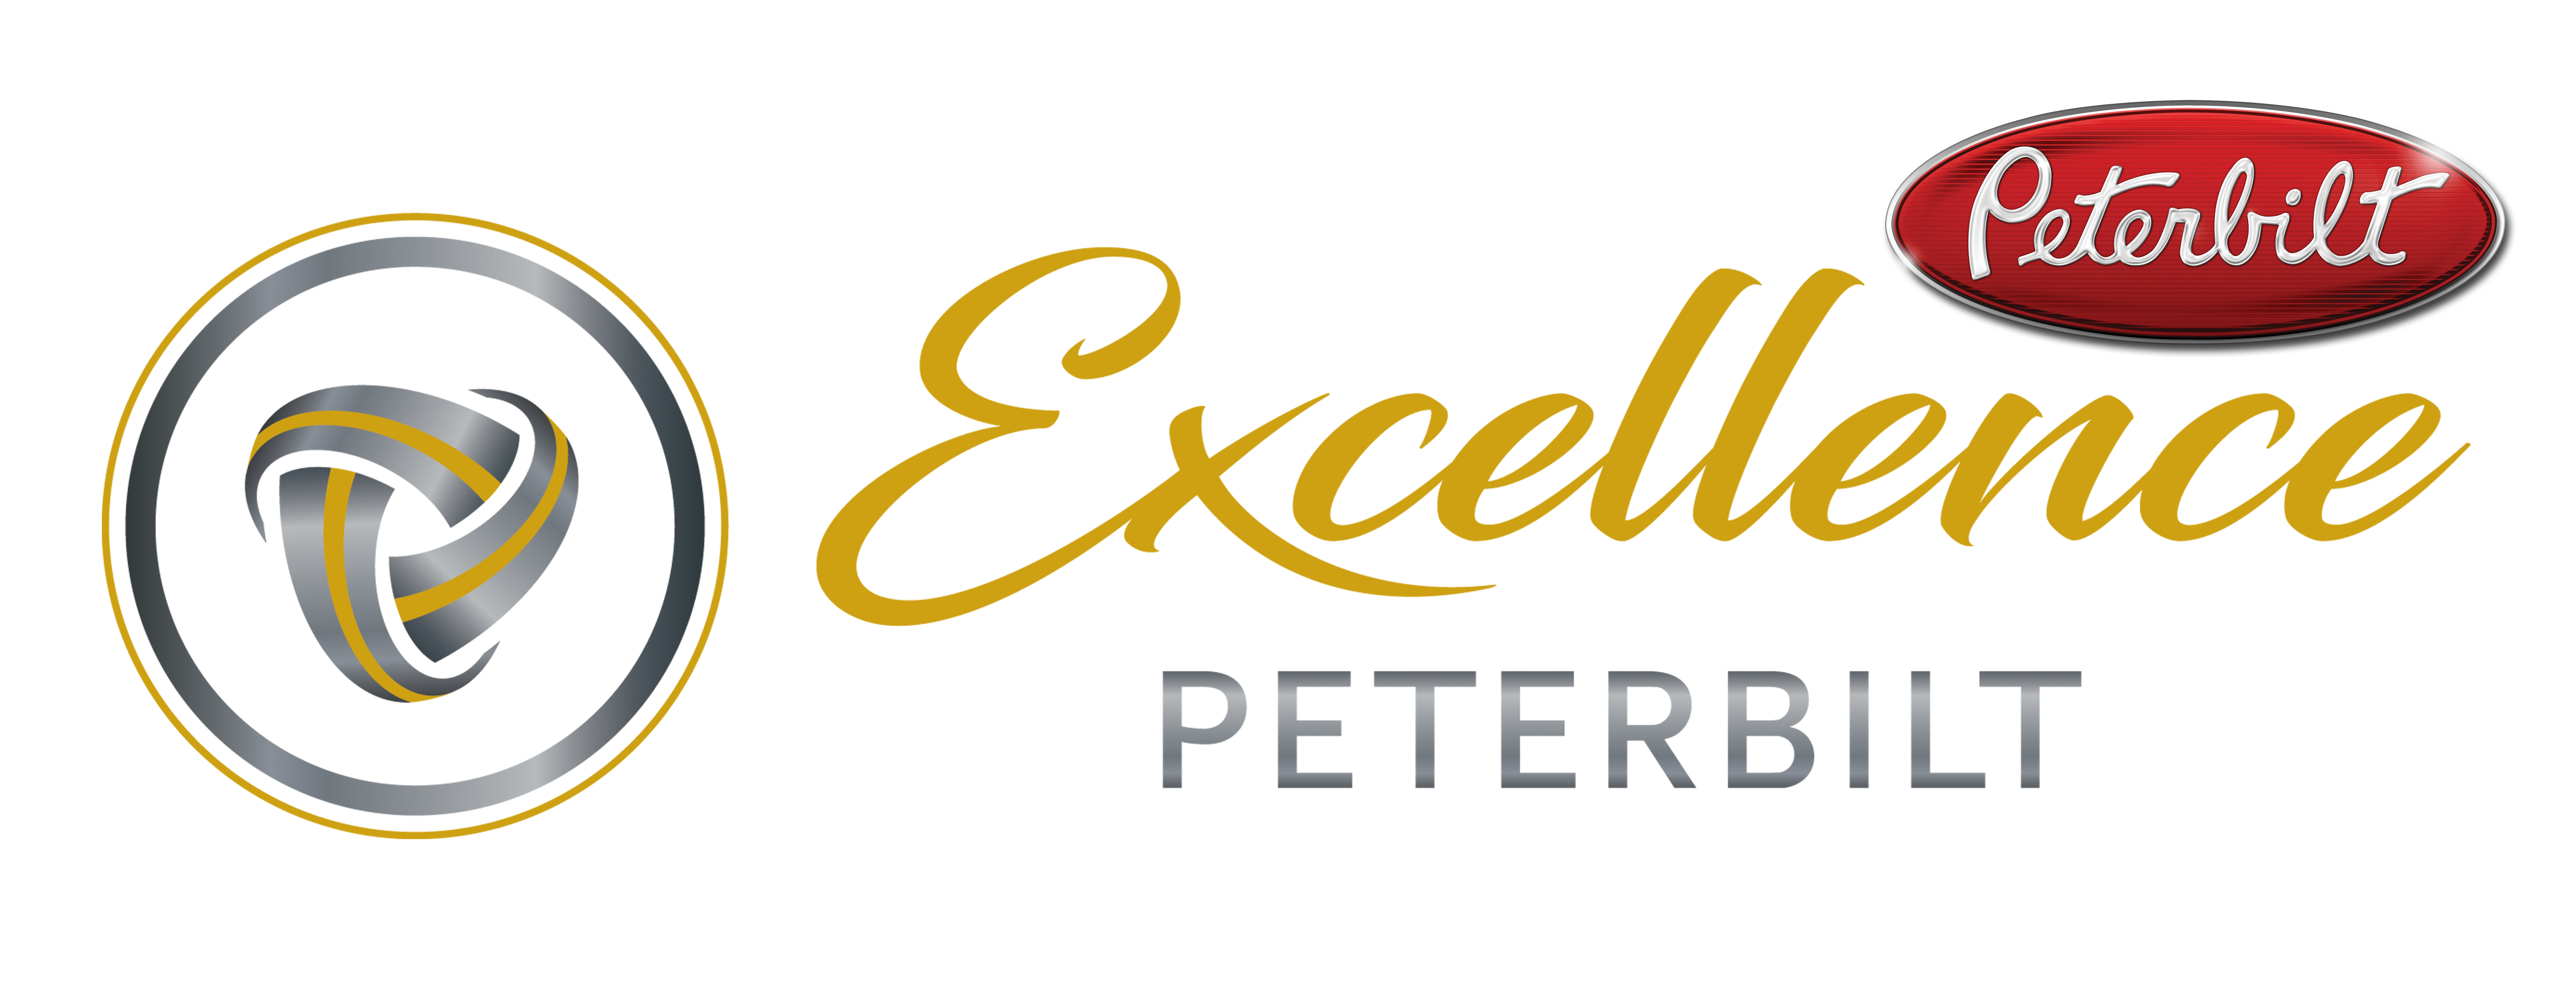 Excellence Peterbilt